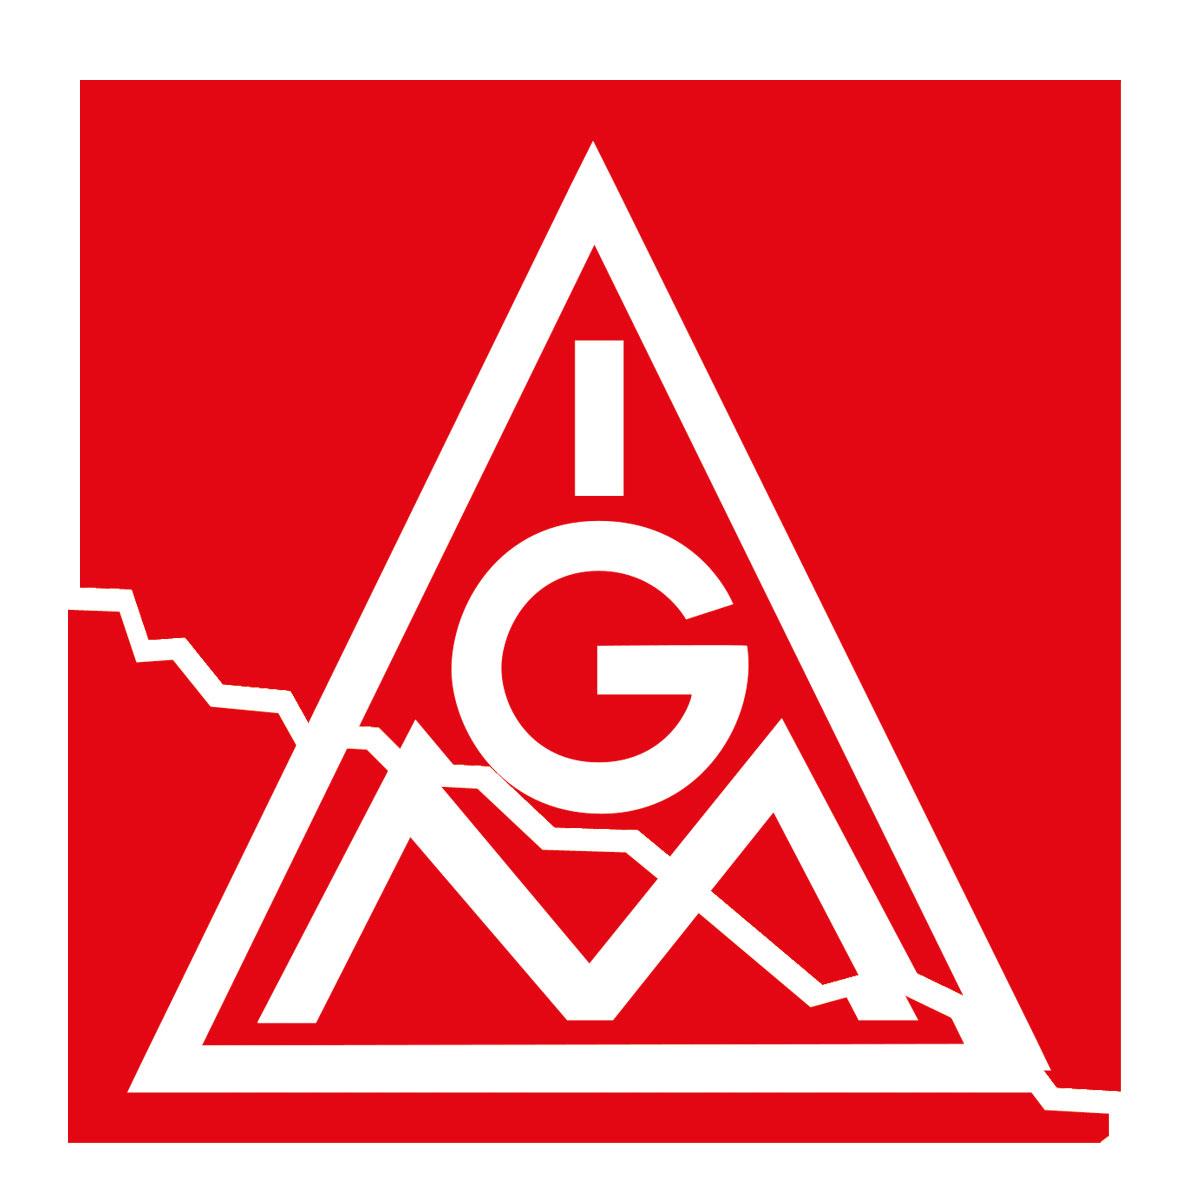 1513 IG Metall logo - Nicht in unserem Namen - Alina Heisig, Anne Rieger, IG Metall, Marion Köster, Sicherheit und Frieden in der Zeitenwende - Hintergrund